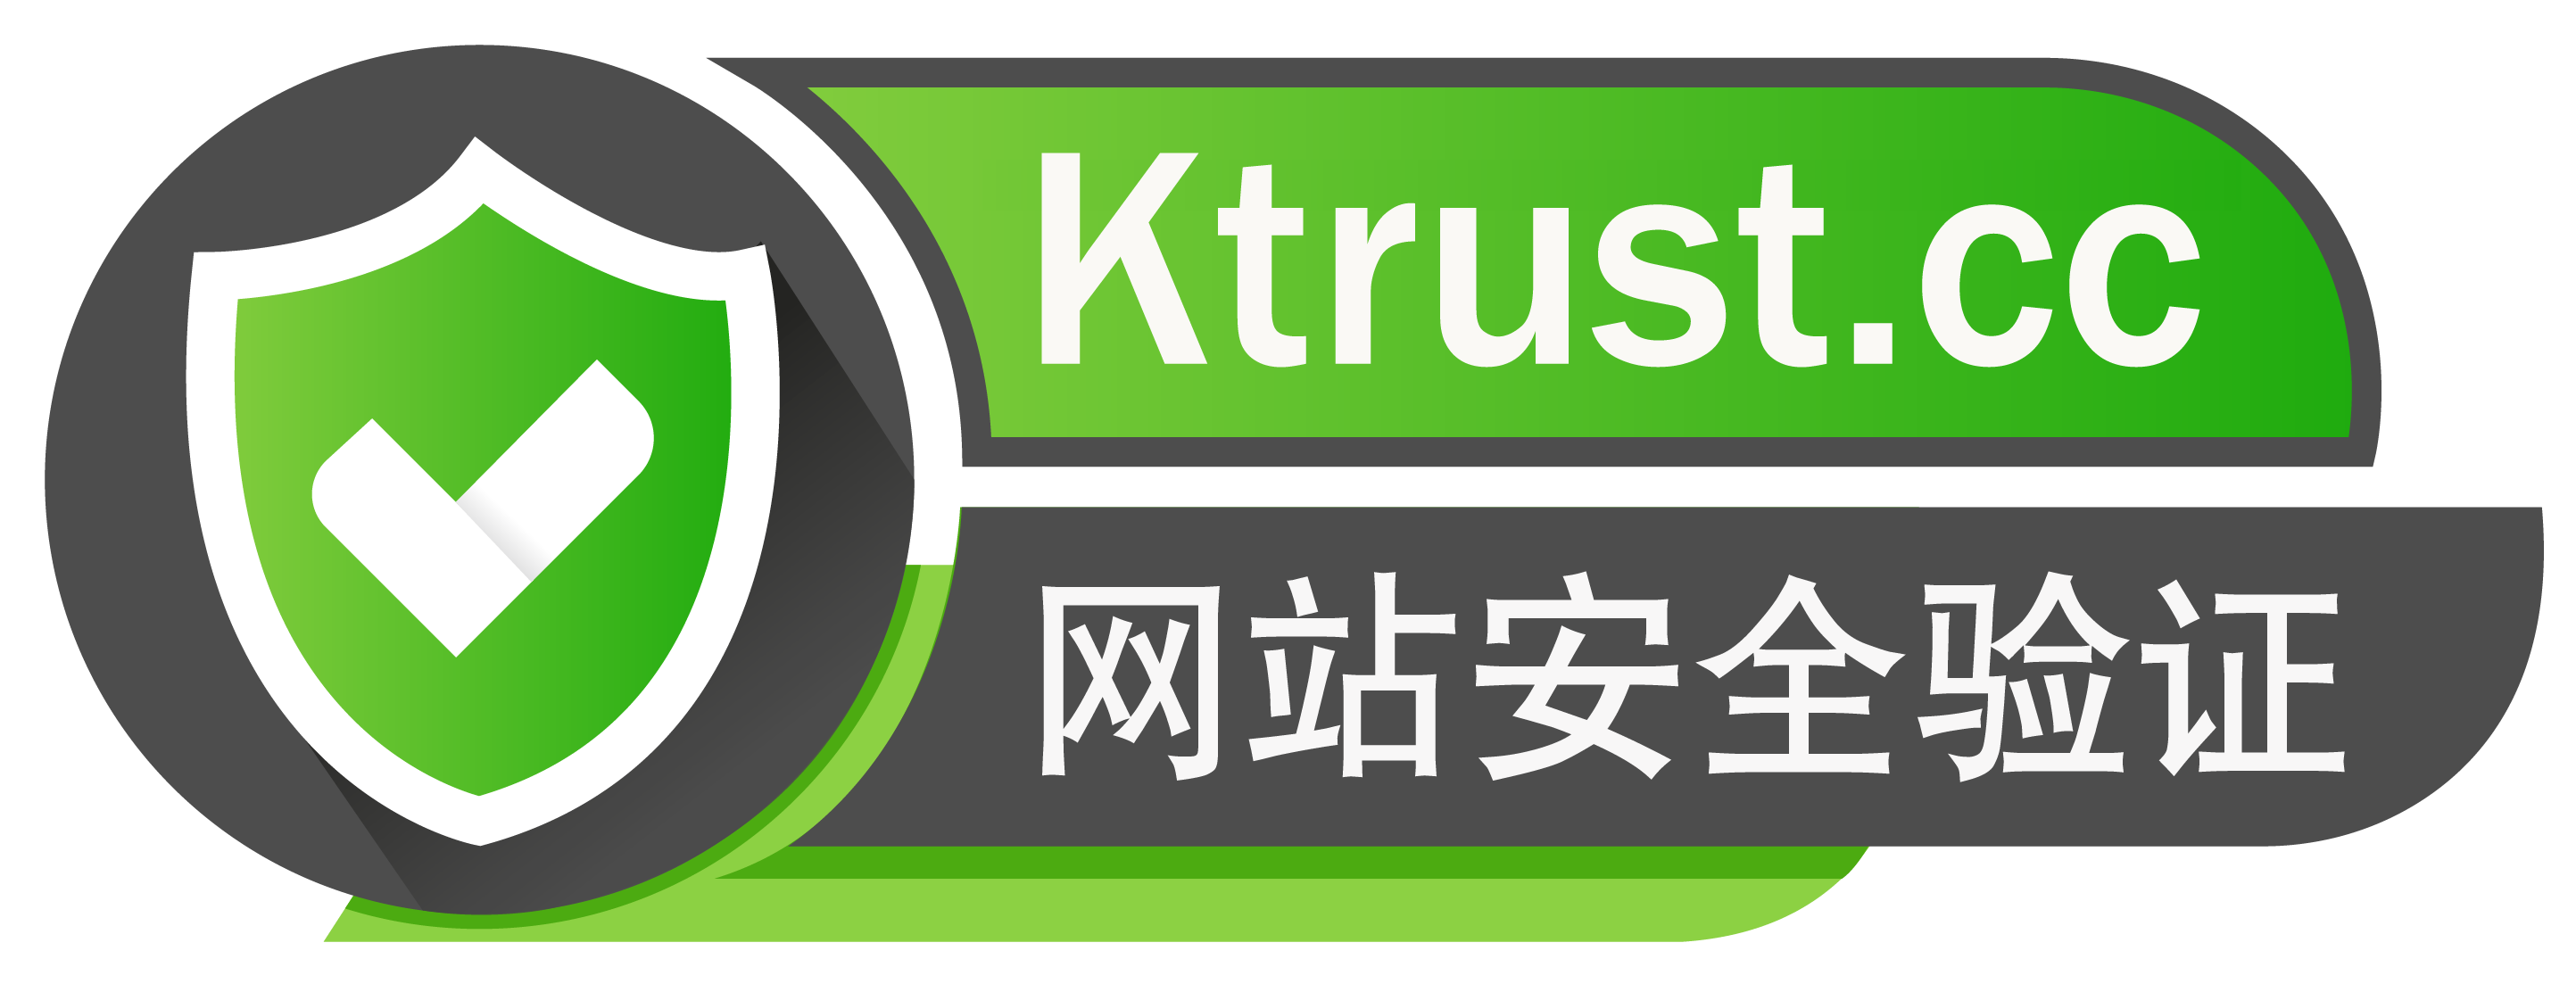 易捷云工作室已通过KTrust的安全验证